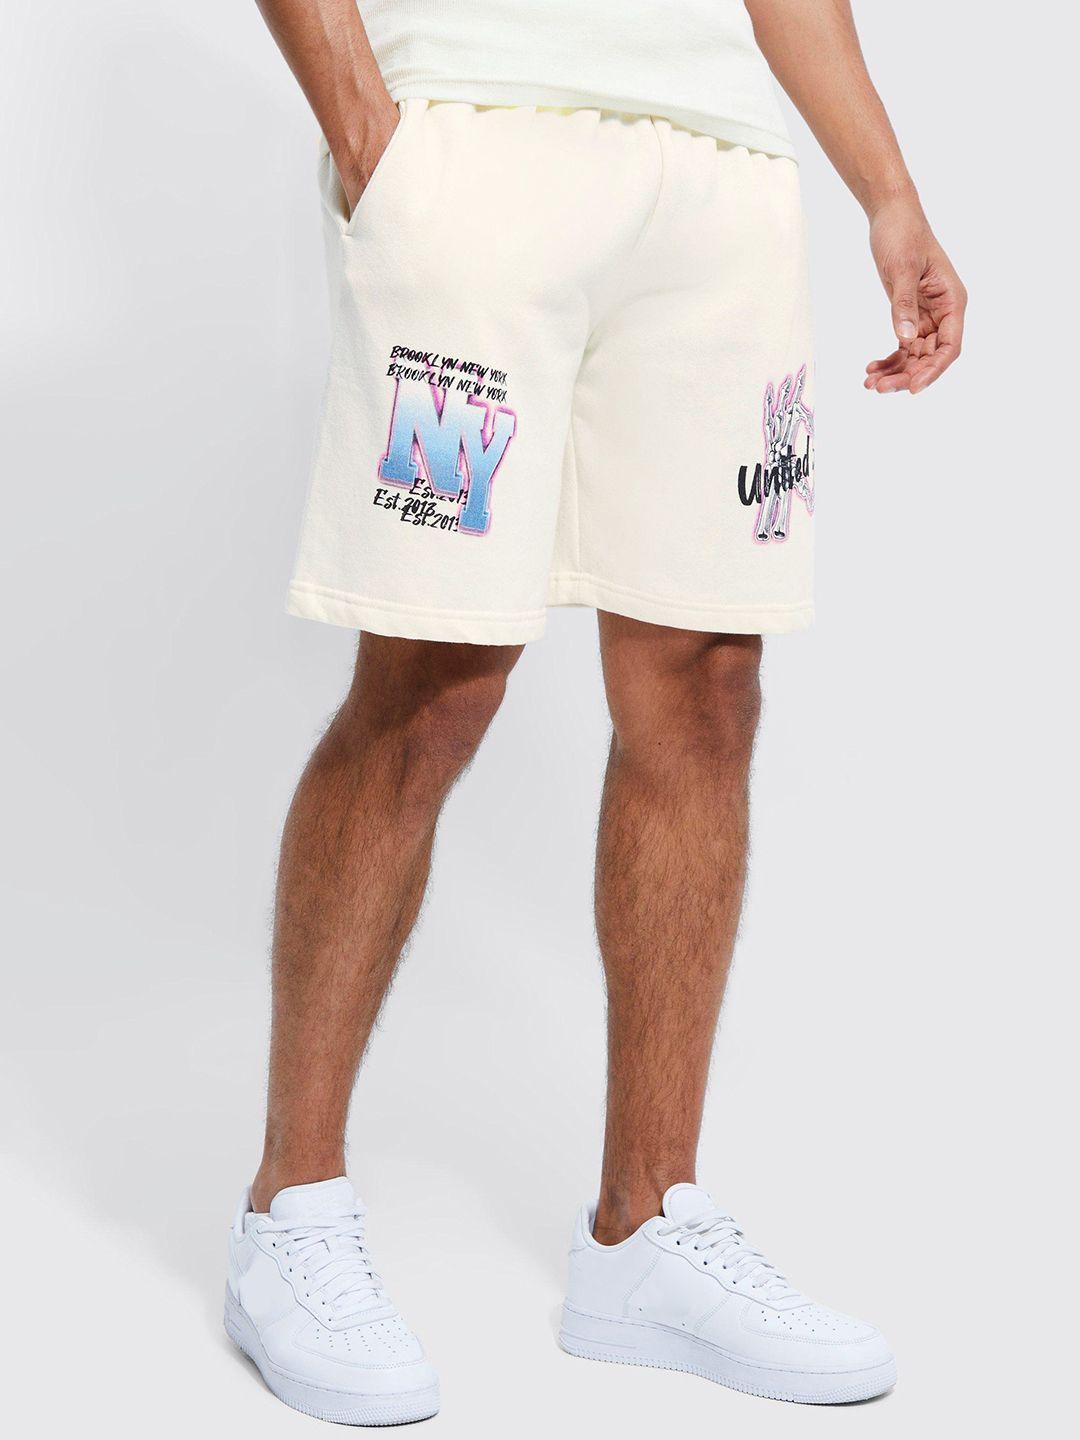 boohooman printed shorts